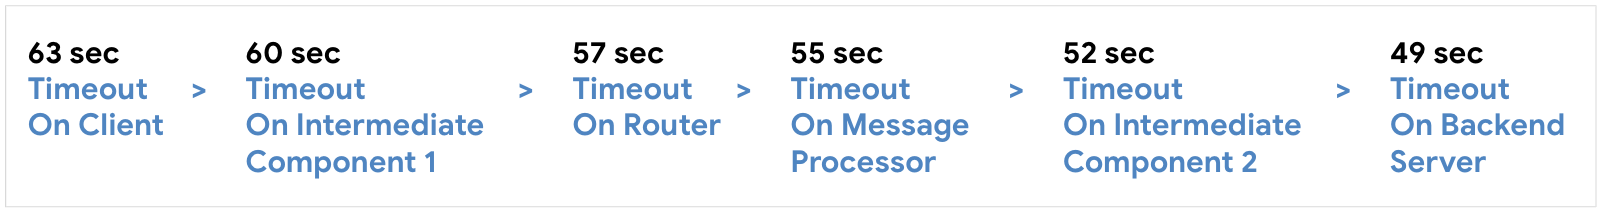 Configure o tempo limite no cliente em 63 segundos, depois em Componente intermediário 1 aos 60 segundos, Roteador em 57 segundos, Processador de mensagens em 55 segundos, Componente intermediário 2 em 52 segundos e Servidor de back-end em 59 segundos